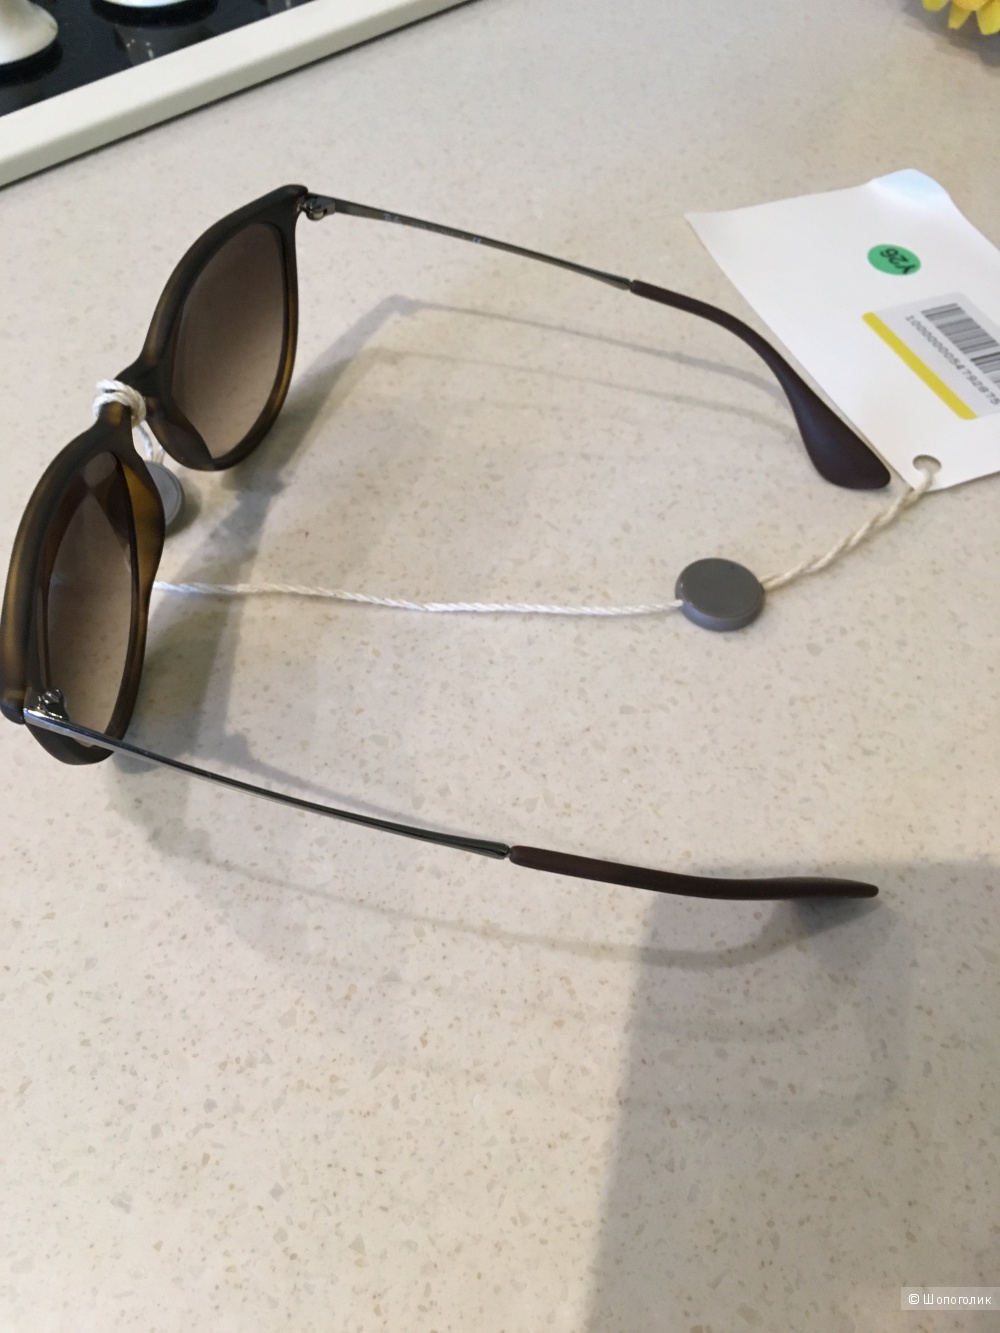 Солнцезащитные очки RAY-BAN